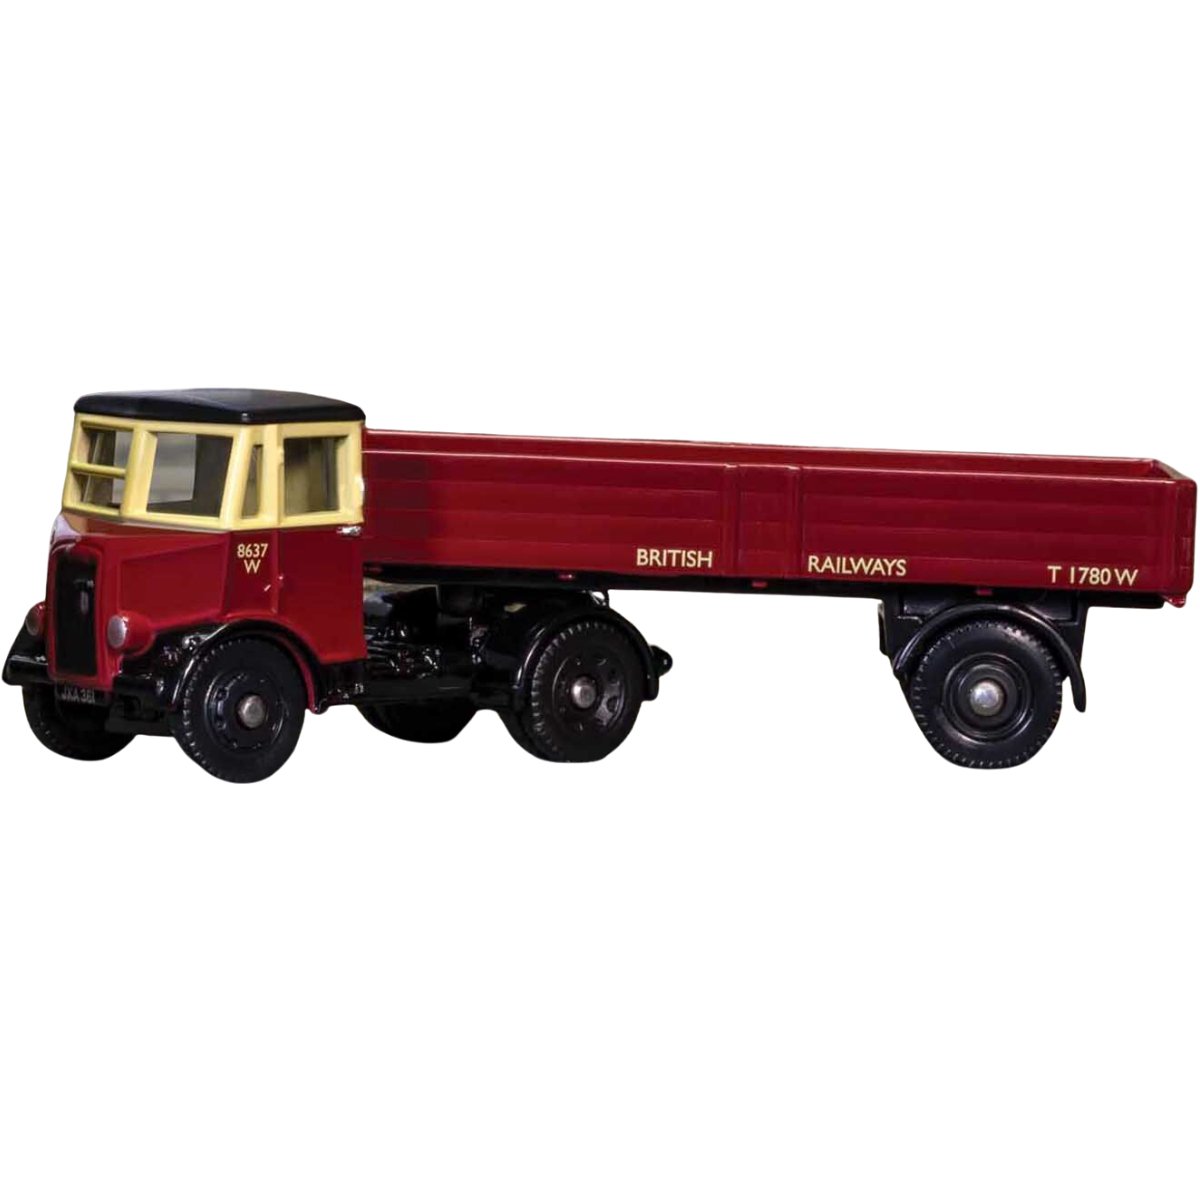 1:76 Scale Model - Corgi DG214006 Thornycroft Nippy Dropside Trailer British Railways